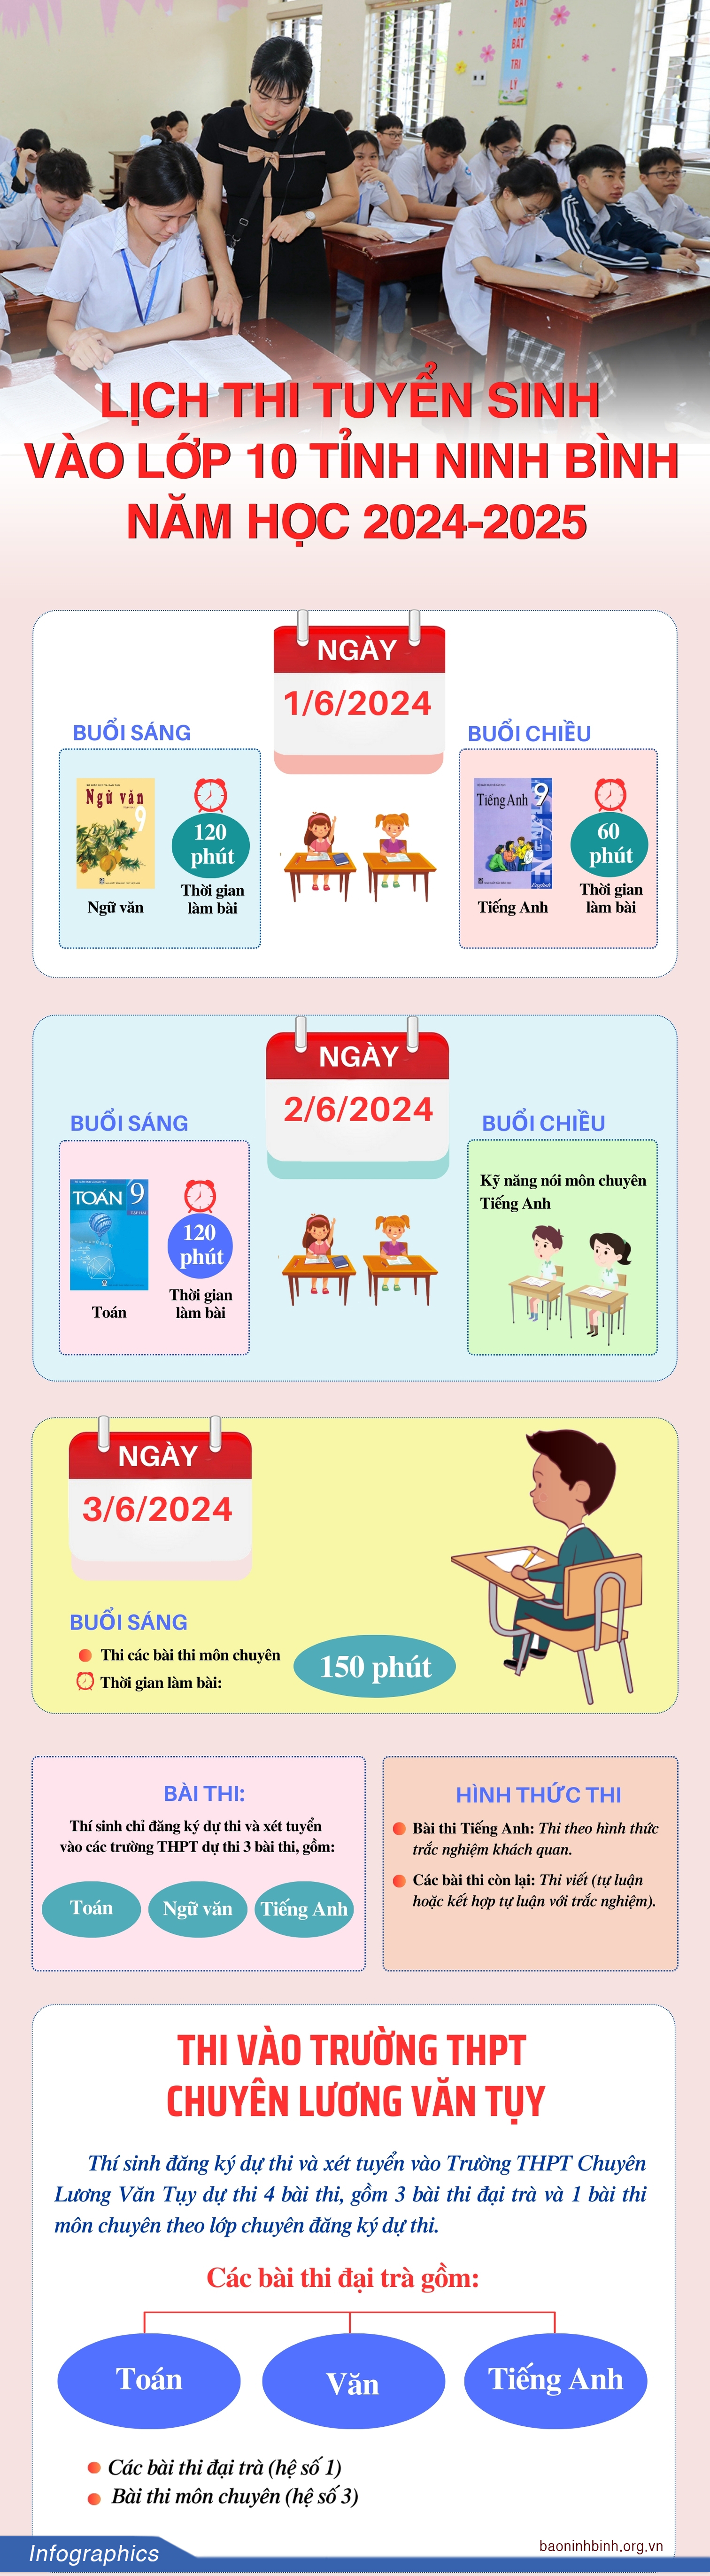 [Infographic] Lịch thi tuyển sinh vào lớp 10 tỉnh Ninh Bình năm học 2024 - 2025